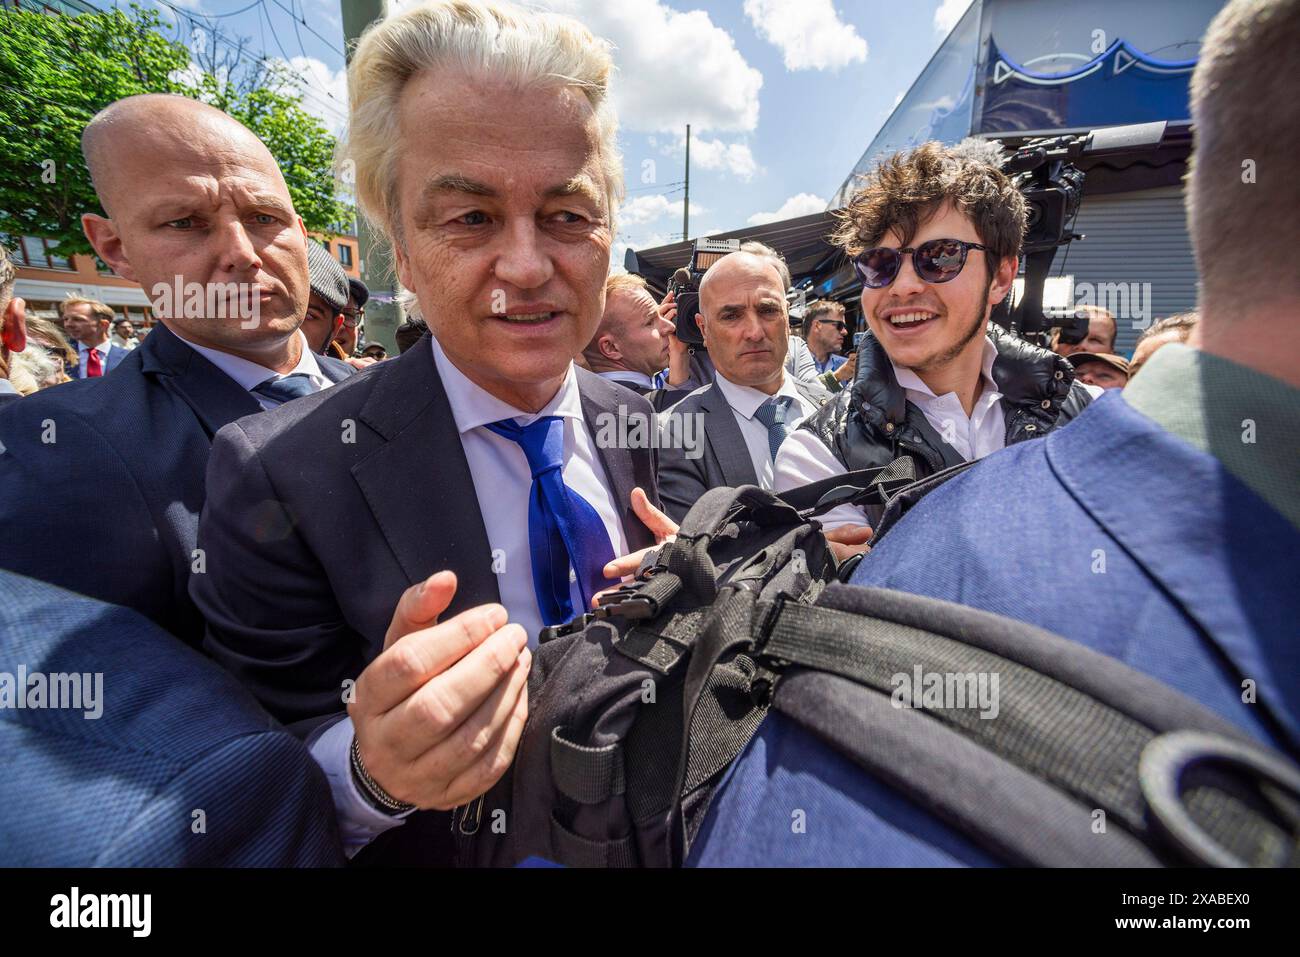 Der niederländische rechtsextreme Politiker Gert Welders, umgeben von seinen Leibwächtern, grüßt einen wohlwollenden, während einer Pressechance des Haagse Marktes. Eine Pressepresse und ein öffentlicher Rausch, als Gert Welders einen Tag vor den Europawahlen eine Pressechance des Haagse Marktes in den Haag hielt. Er gab Presseinterviews und zahlreiche Selfies mit Mitgliedern der Öffentlichkeit. Gert Wilders ist ein Politiker, der die rechtsextreme niederländische Partei (PVV) anführte und 2006 von ihm gegründet wurde. Gegen den Islam war Wilders bei den Wahlen im letzten Jahr an der Spitze der Umfragen und schloss ein Abkommen mit drei anderen Parteiführern. Er rannte Stockfoto